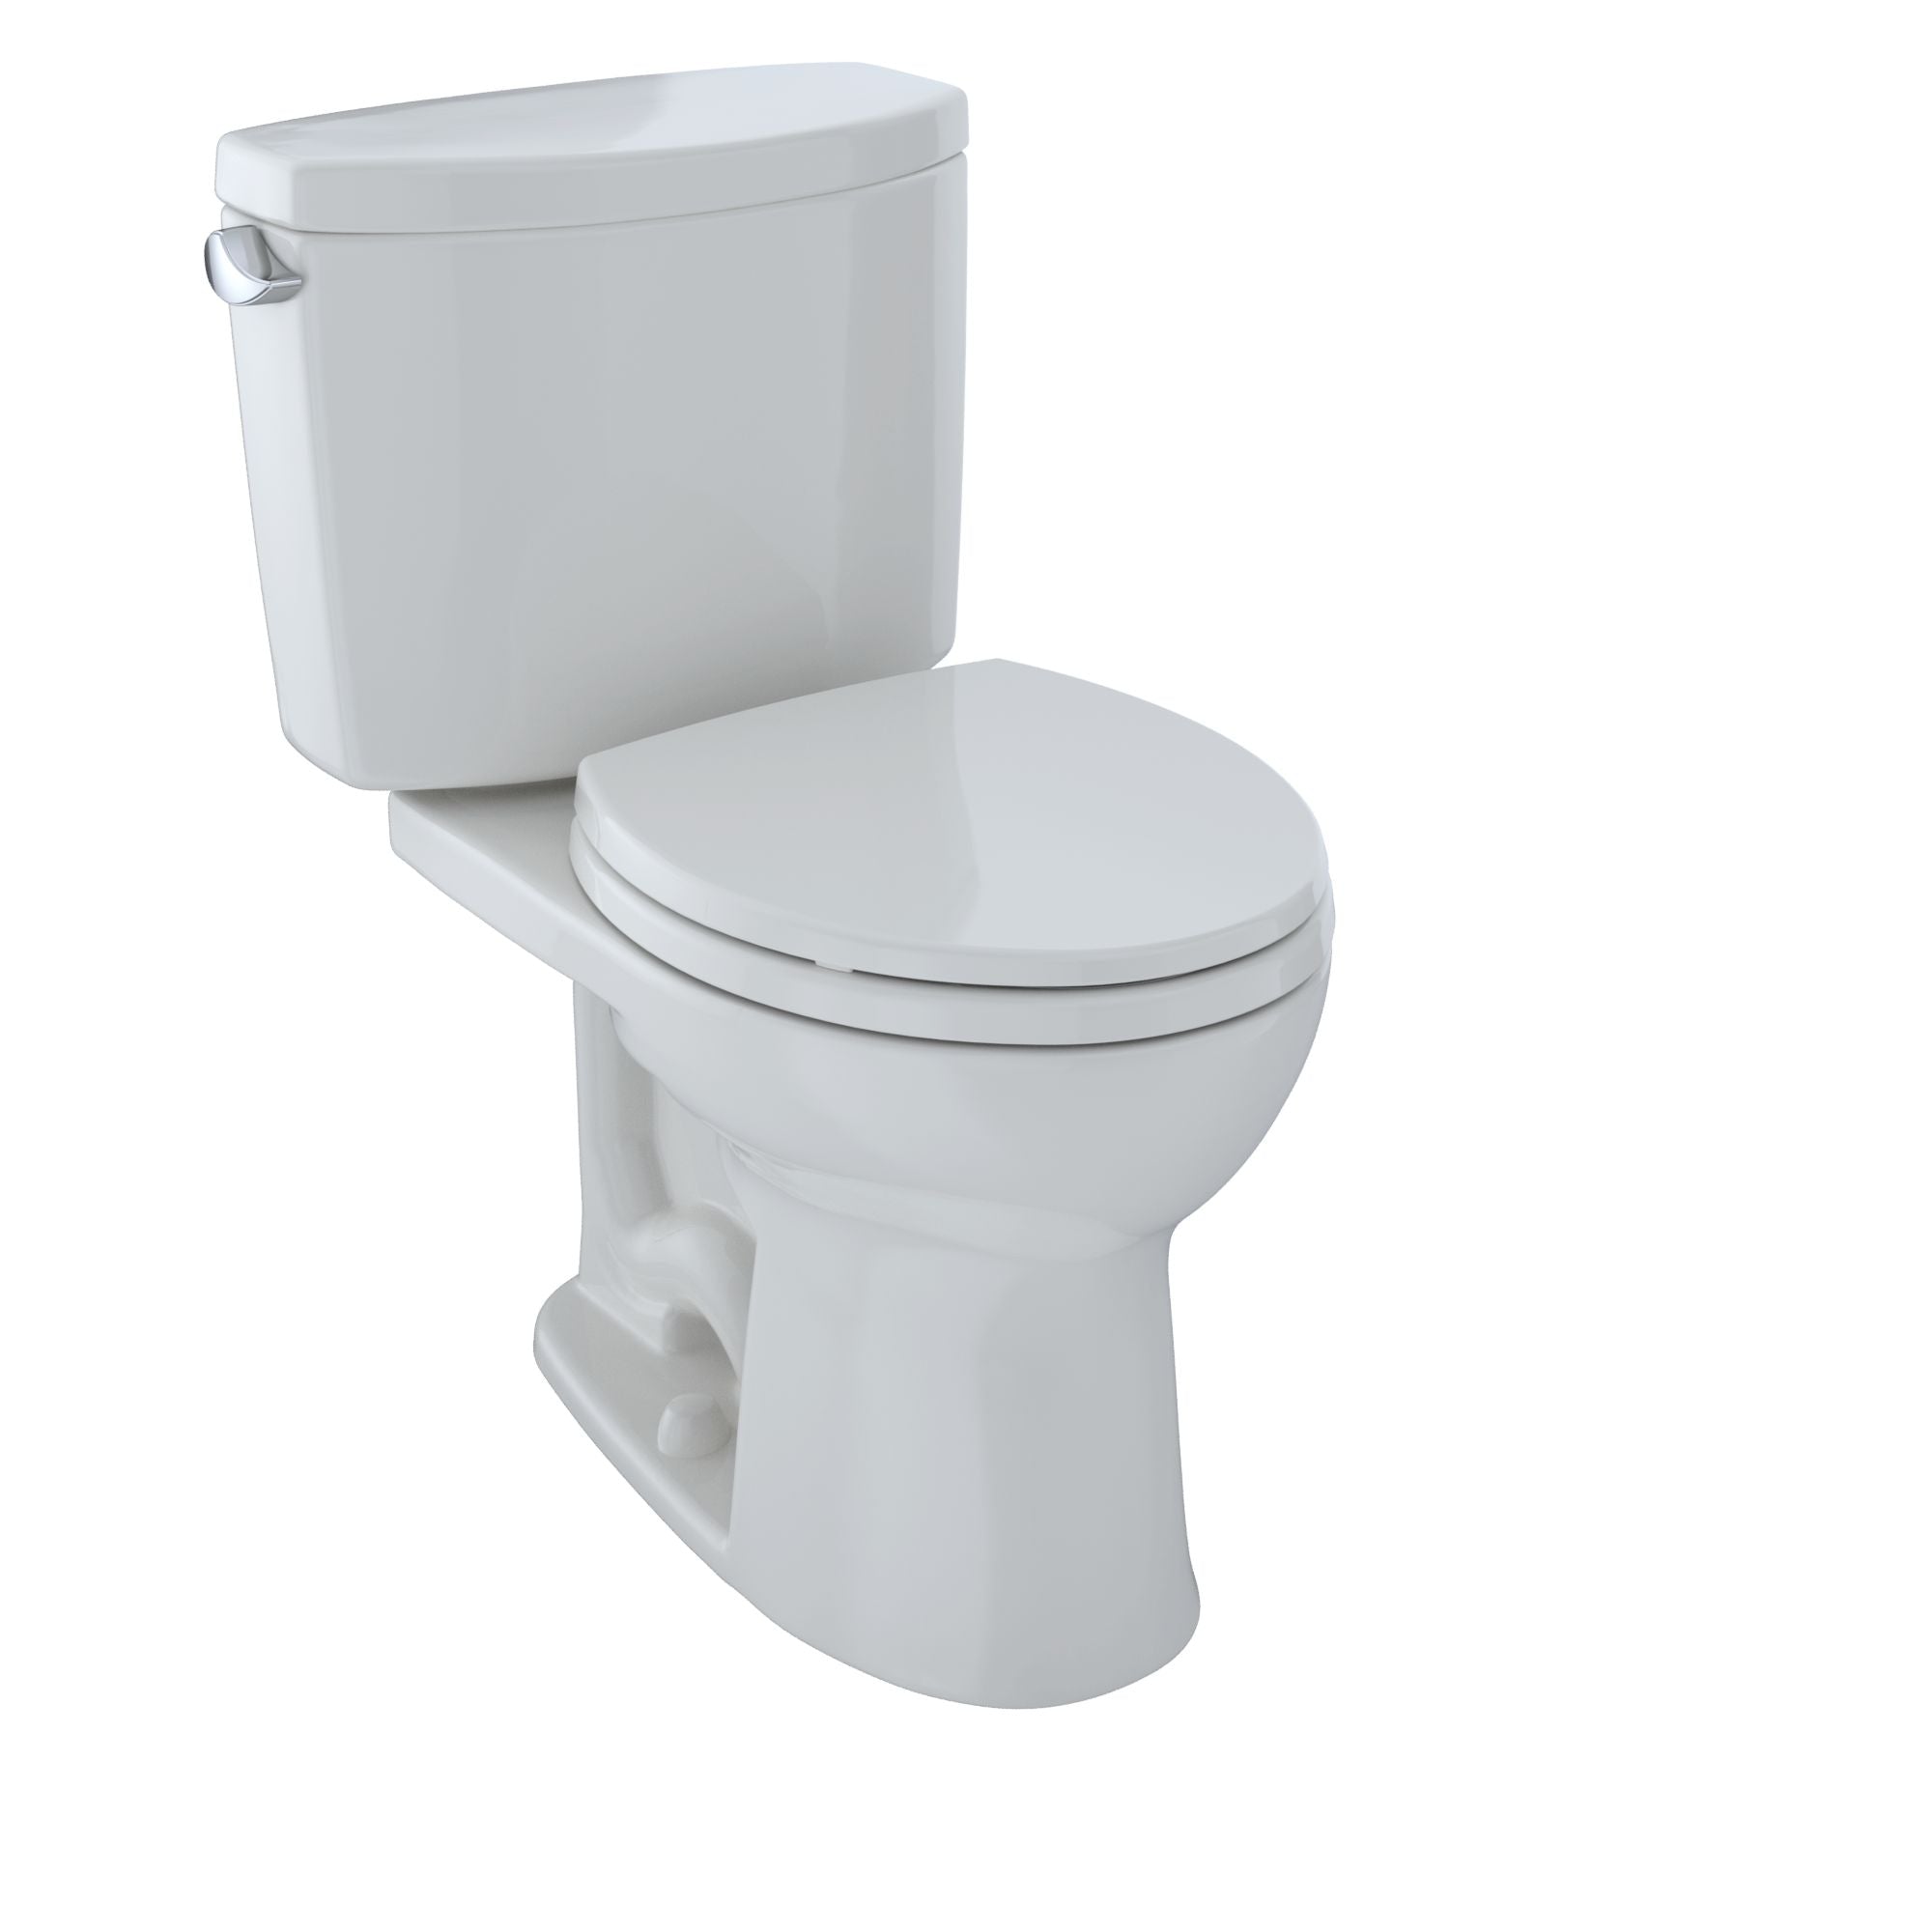 Toto Drake II Two-piece Toilet Round Bowl 1.28 GPF